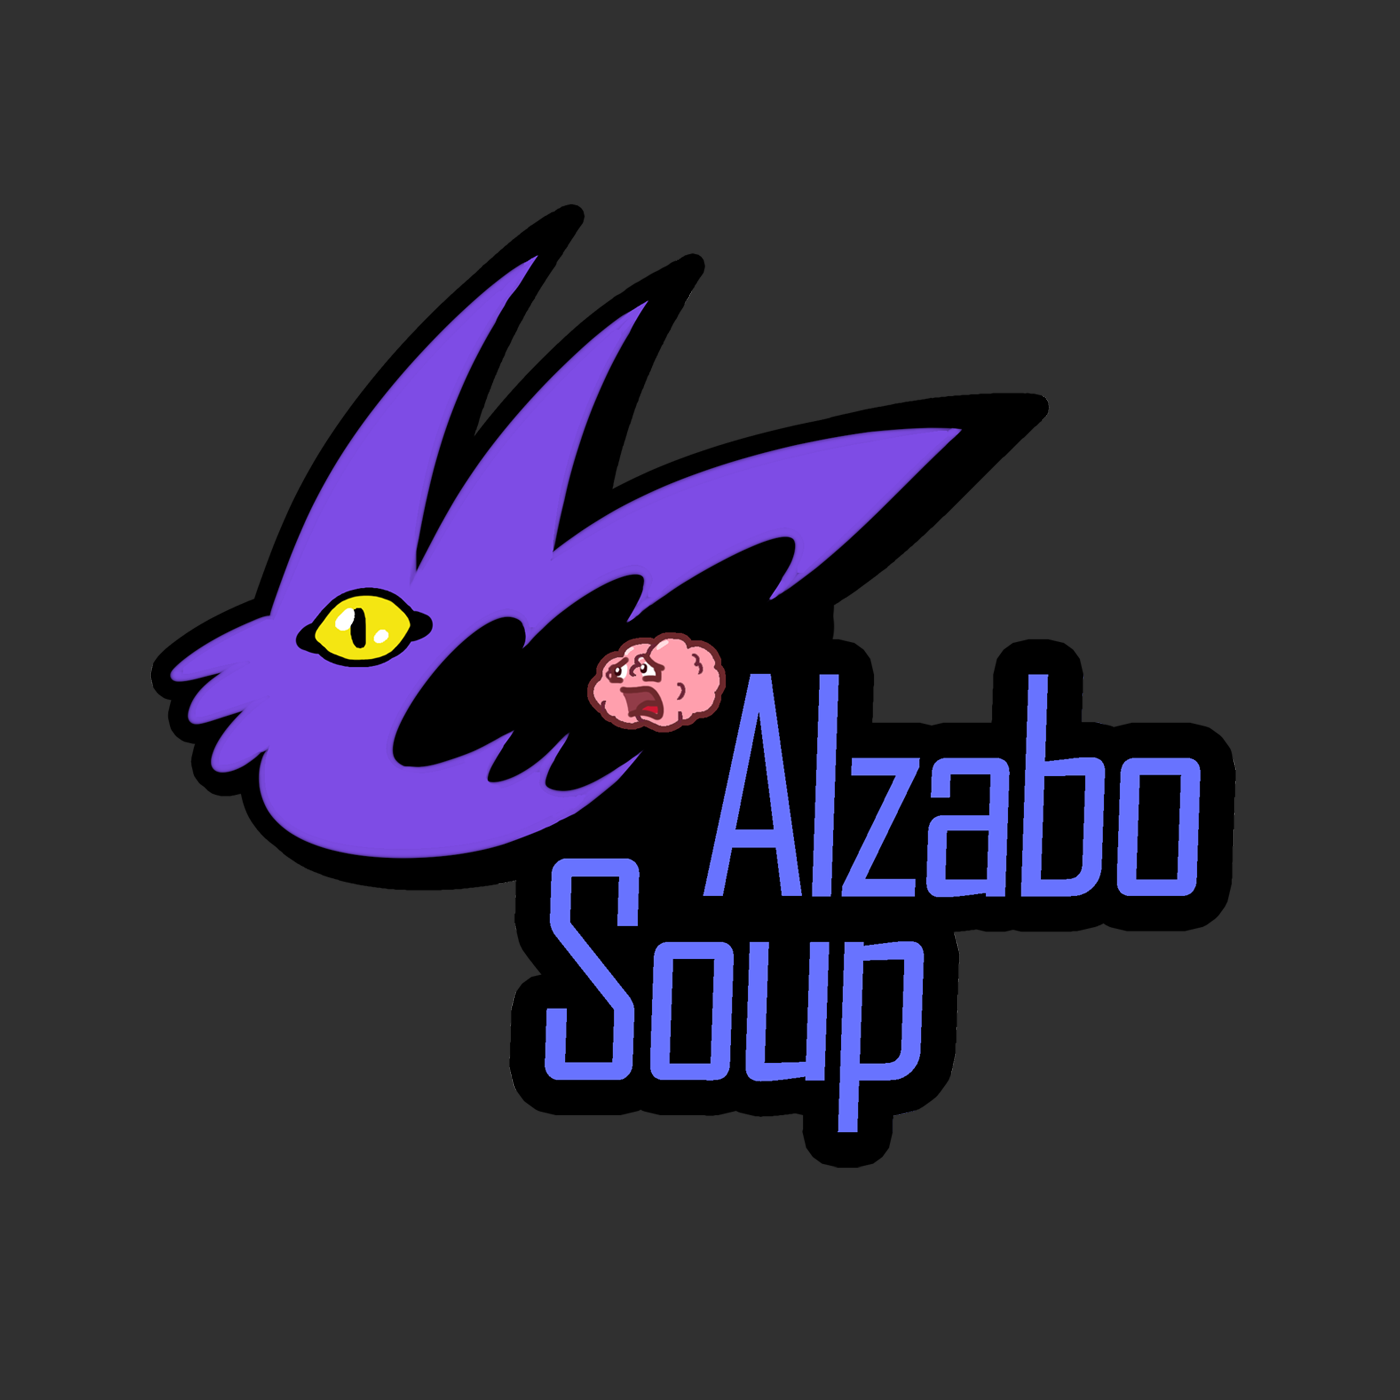 www.alzabosoup.com